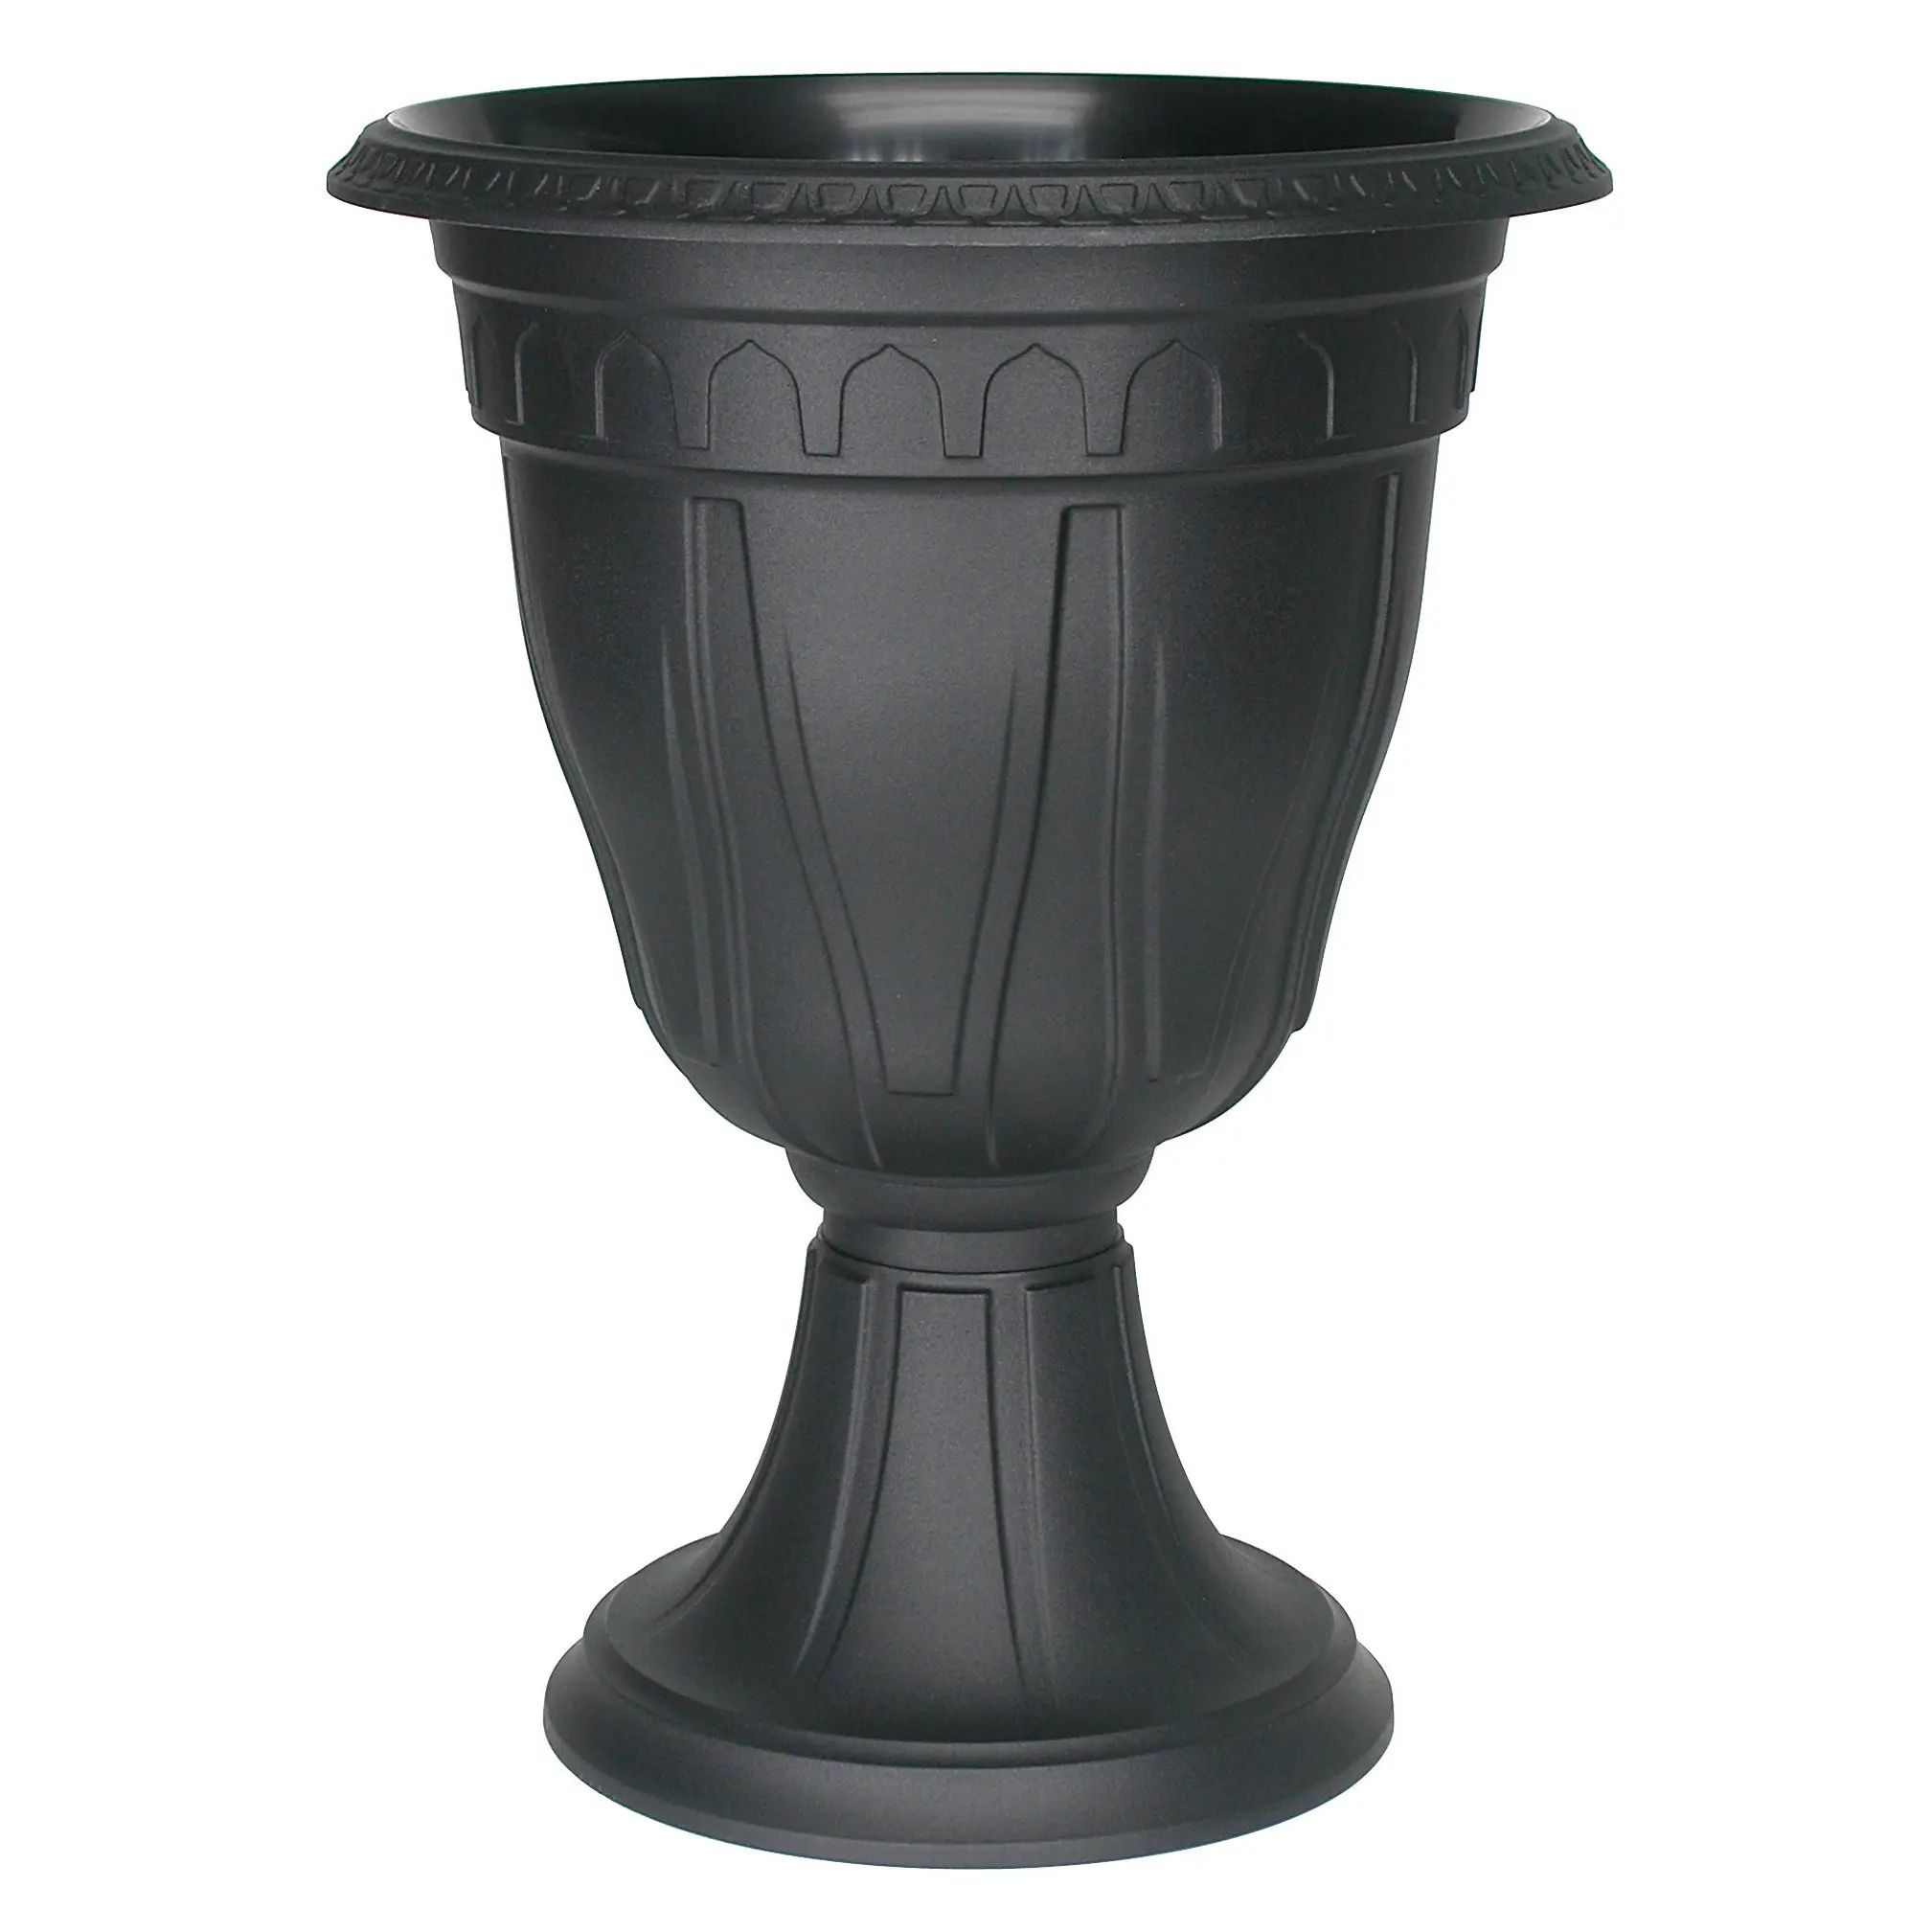 Cheap Black Plastic Urn Planters, find Black Plastic Urn Planters deals